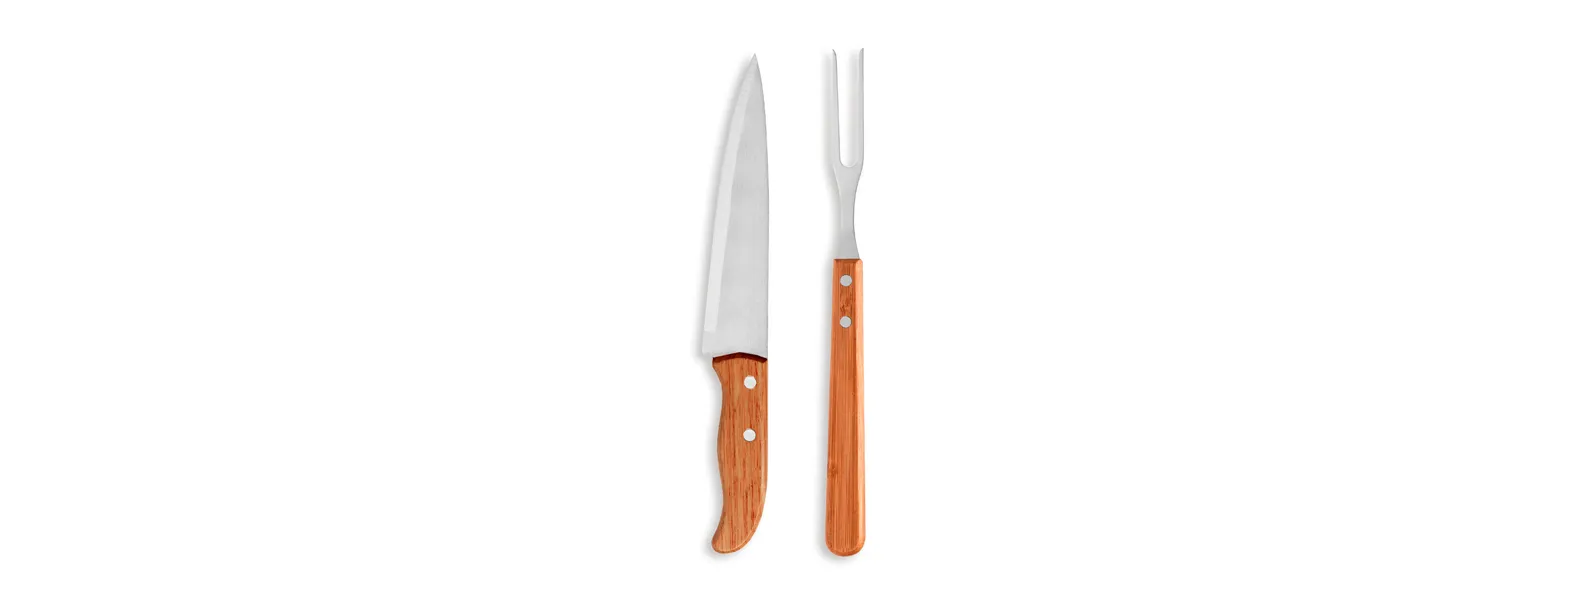 Conjunto de garfo e faca em bambu/inox. Acompanha faca 7'' e garfo trinchante em bambu/inox. Como cortesia, fazemos uma gravação na lâmina da faca com os cortes do boi.